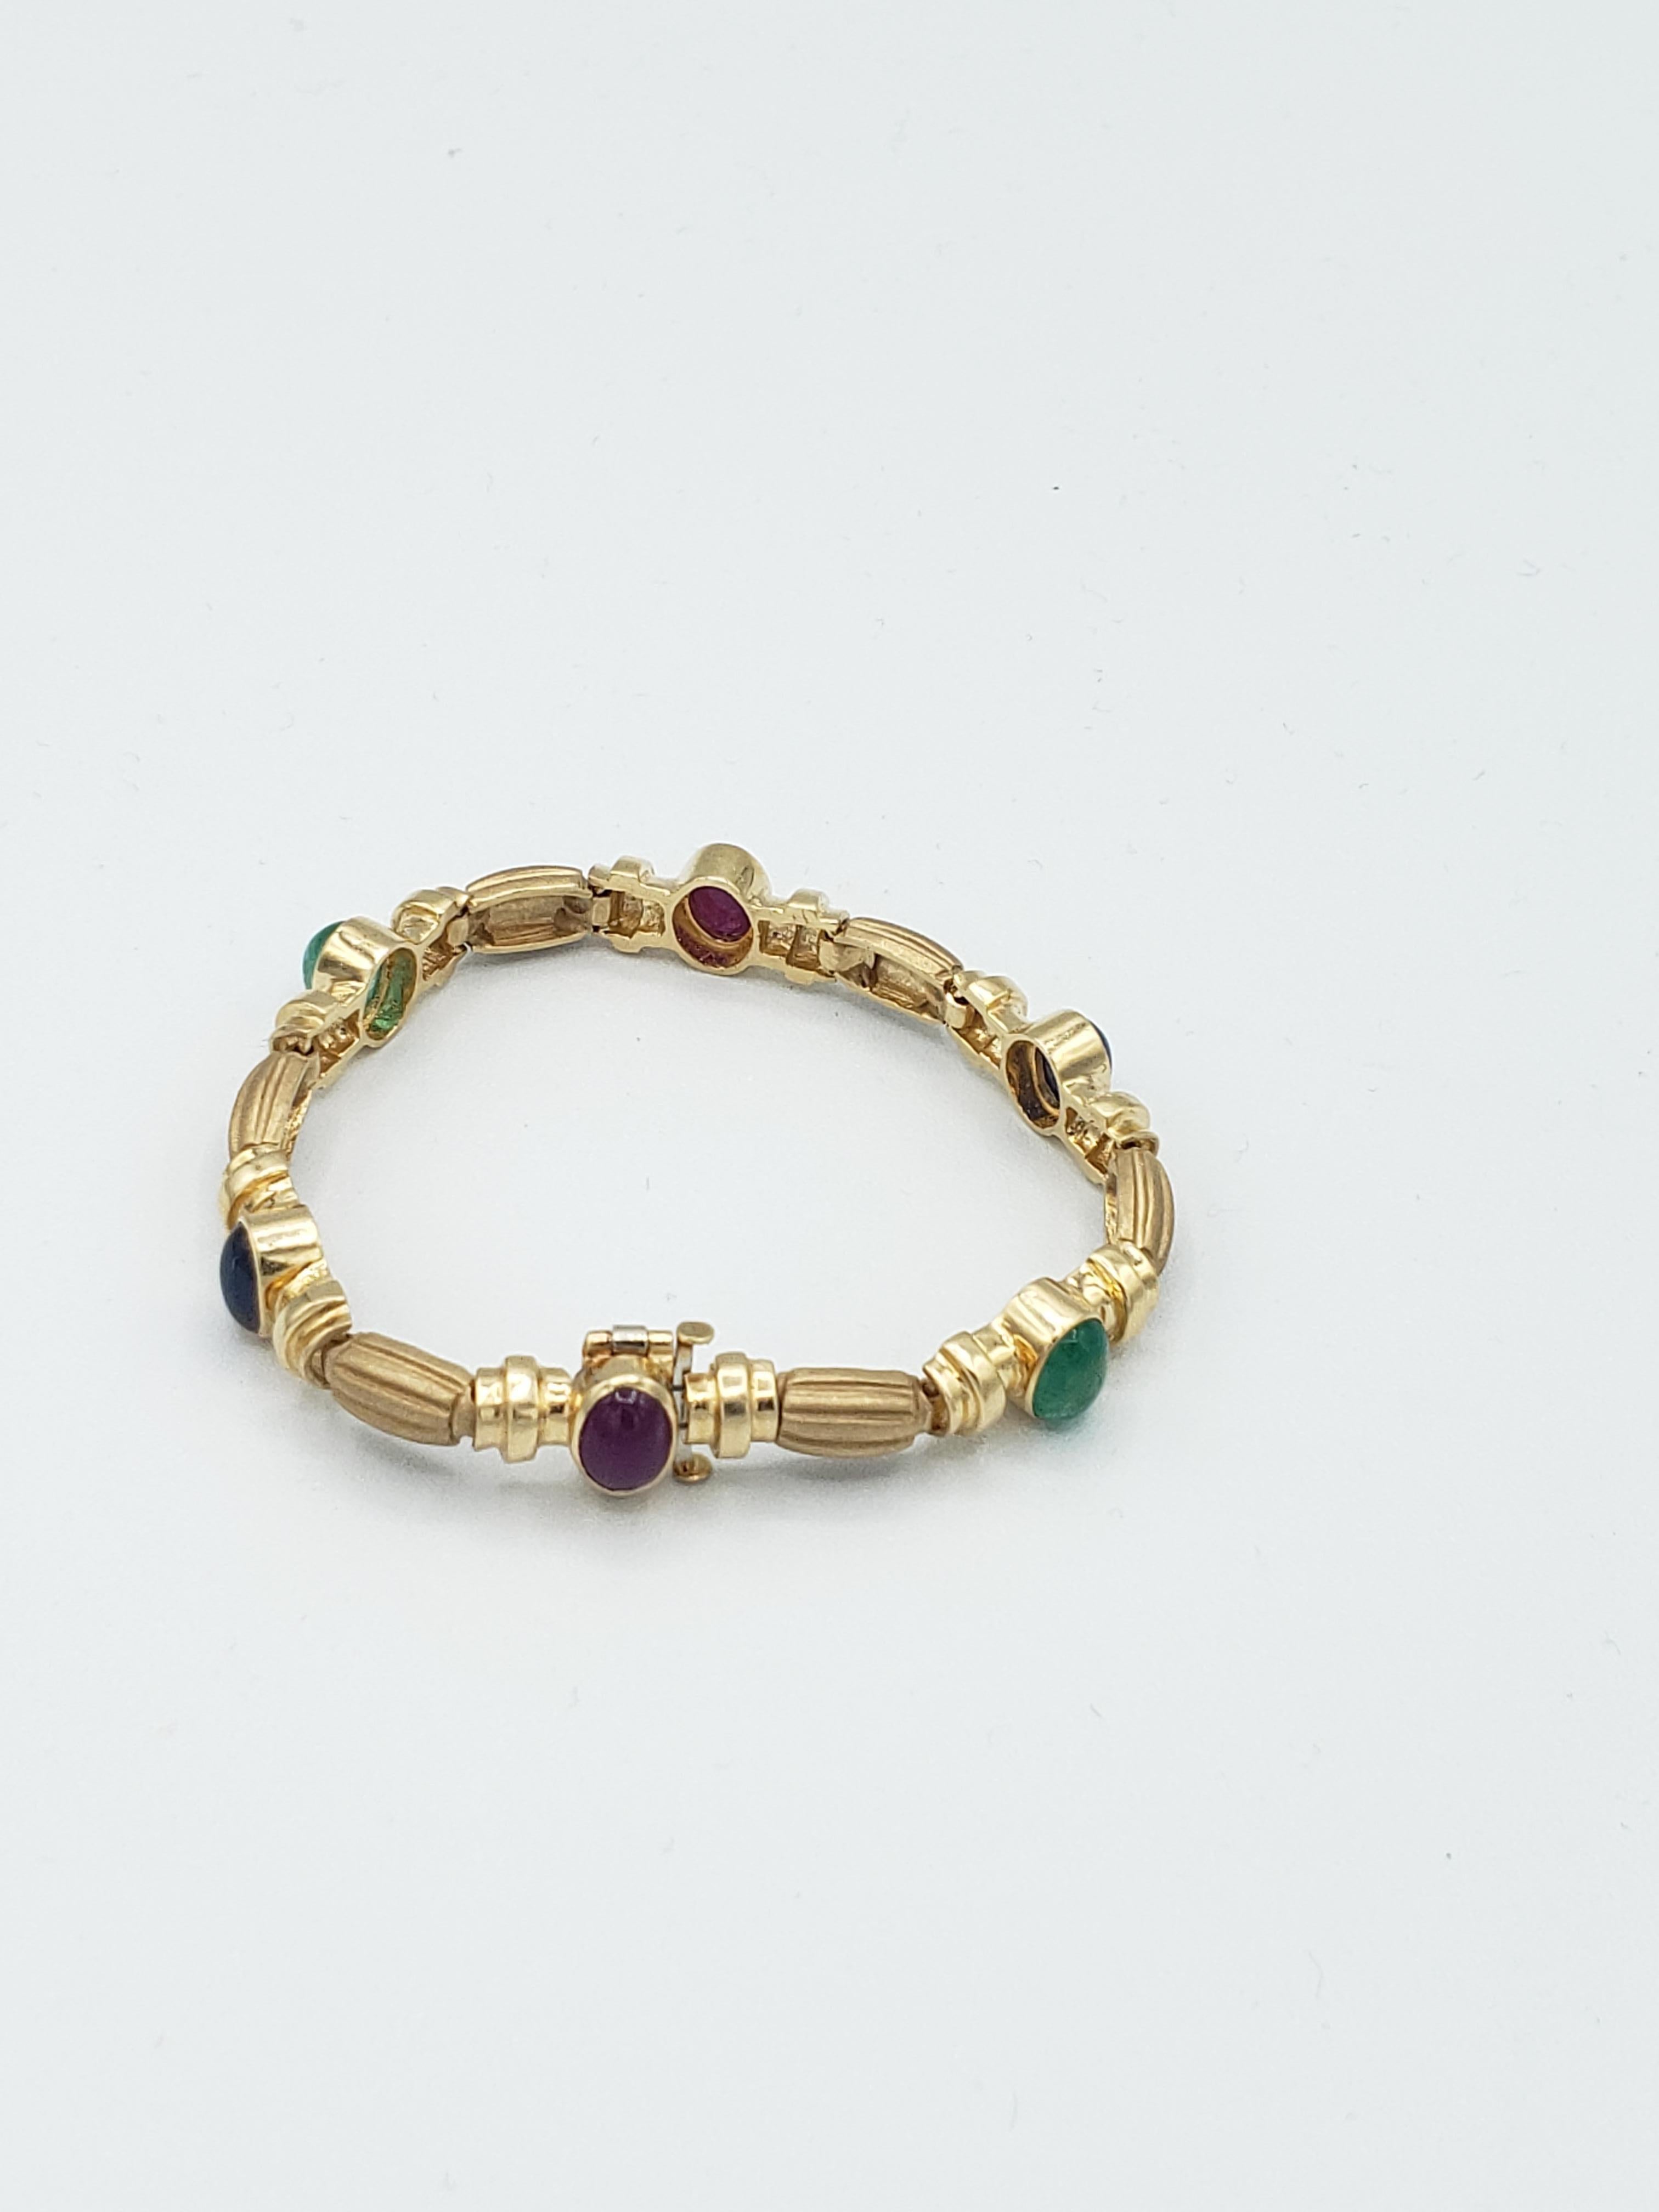 Ce bracelet exquis de LaFrancee est fabriqué en or jaune massif 14 carats et présente de superbes rubis, saphirs et émeraudes naturels. Le bracelet de style byzantin est un clin d'œil à la Nature avec ses détails complexes et ses magnifiques pierres